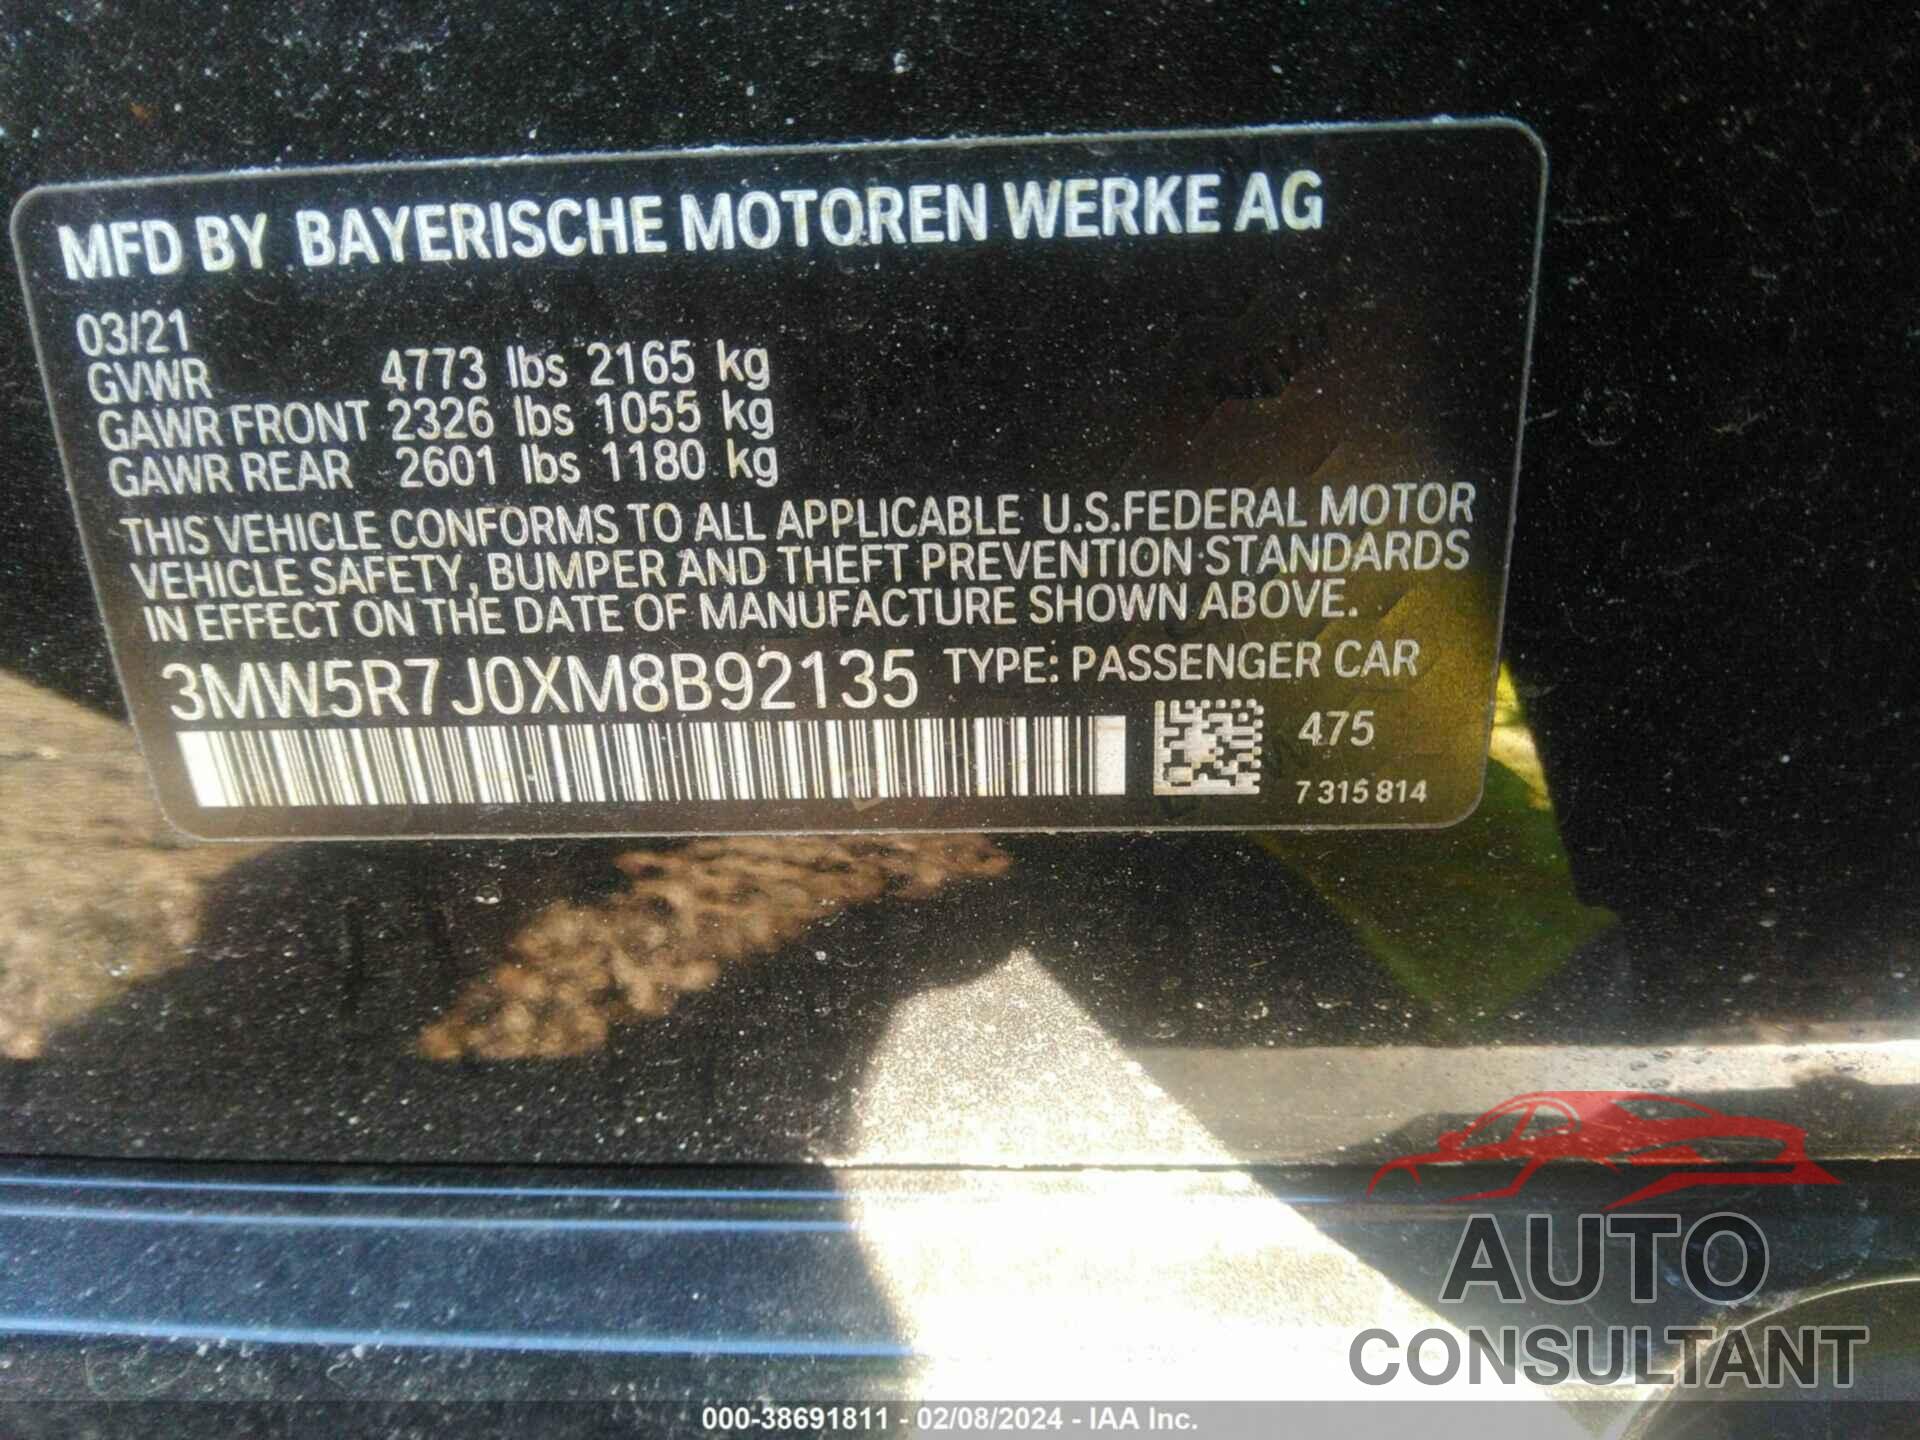 BMW 330XI 2021 - 3MW5R7J0XM8B92135